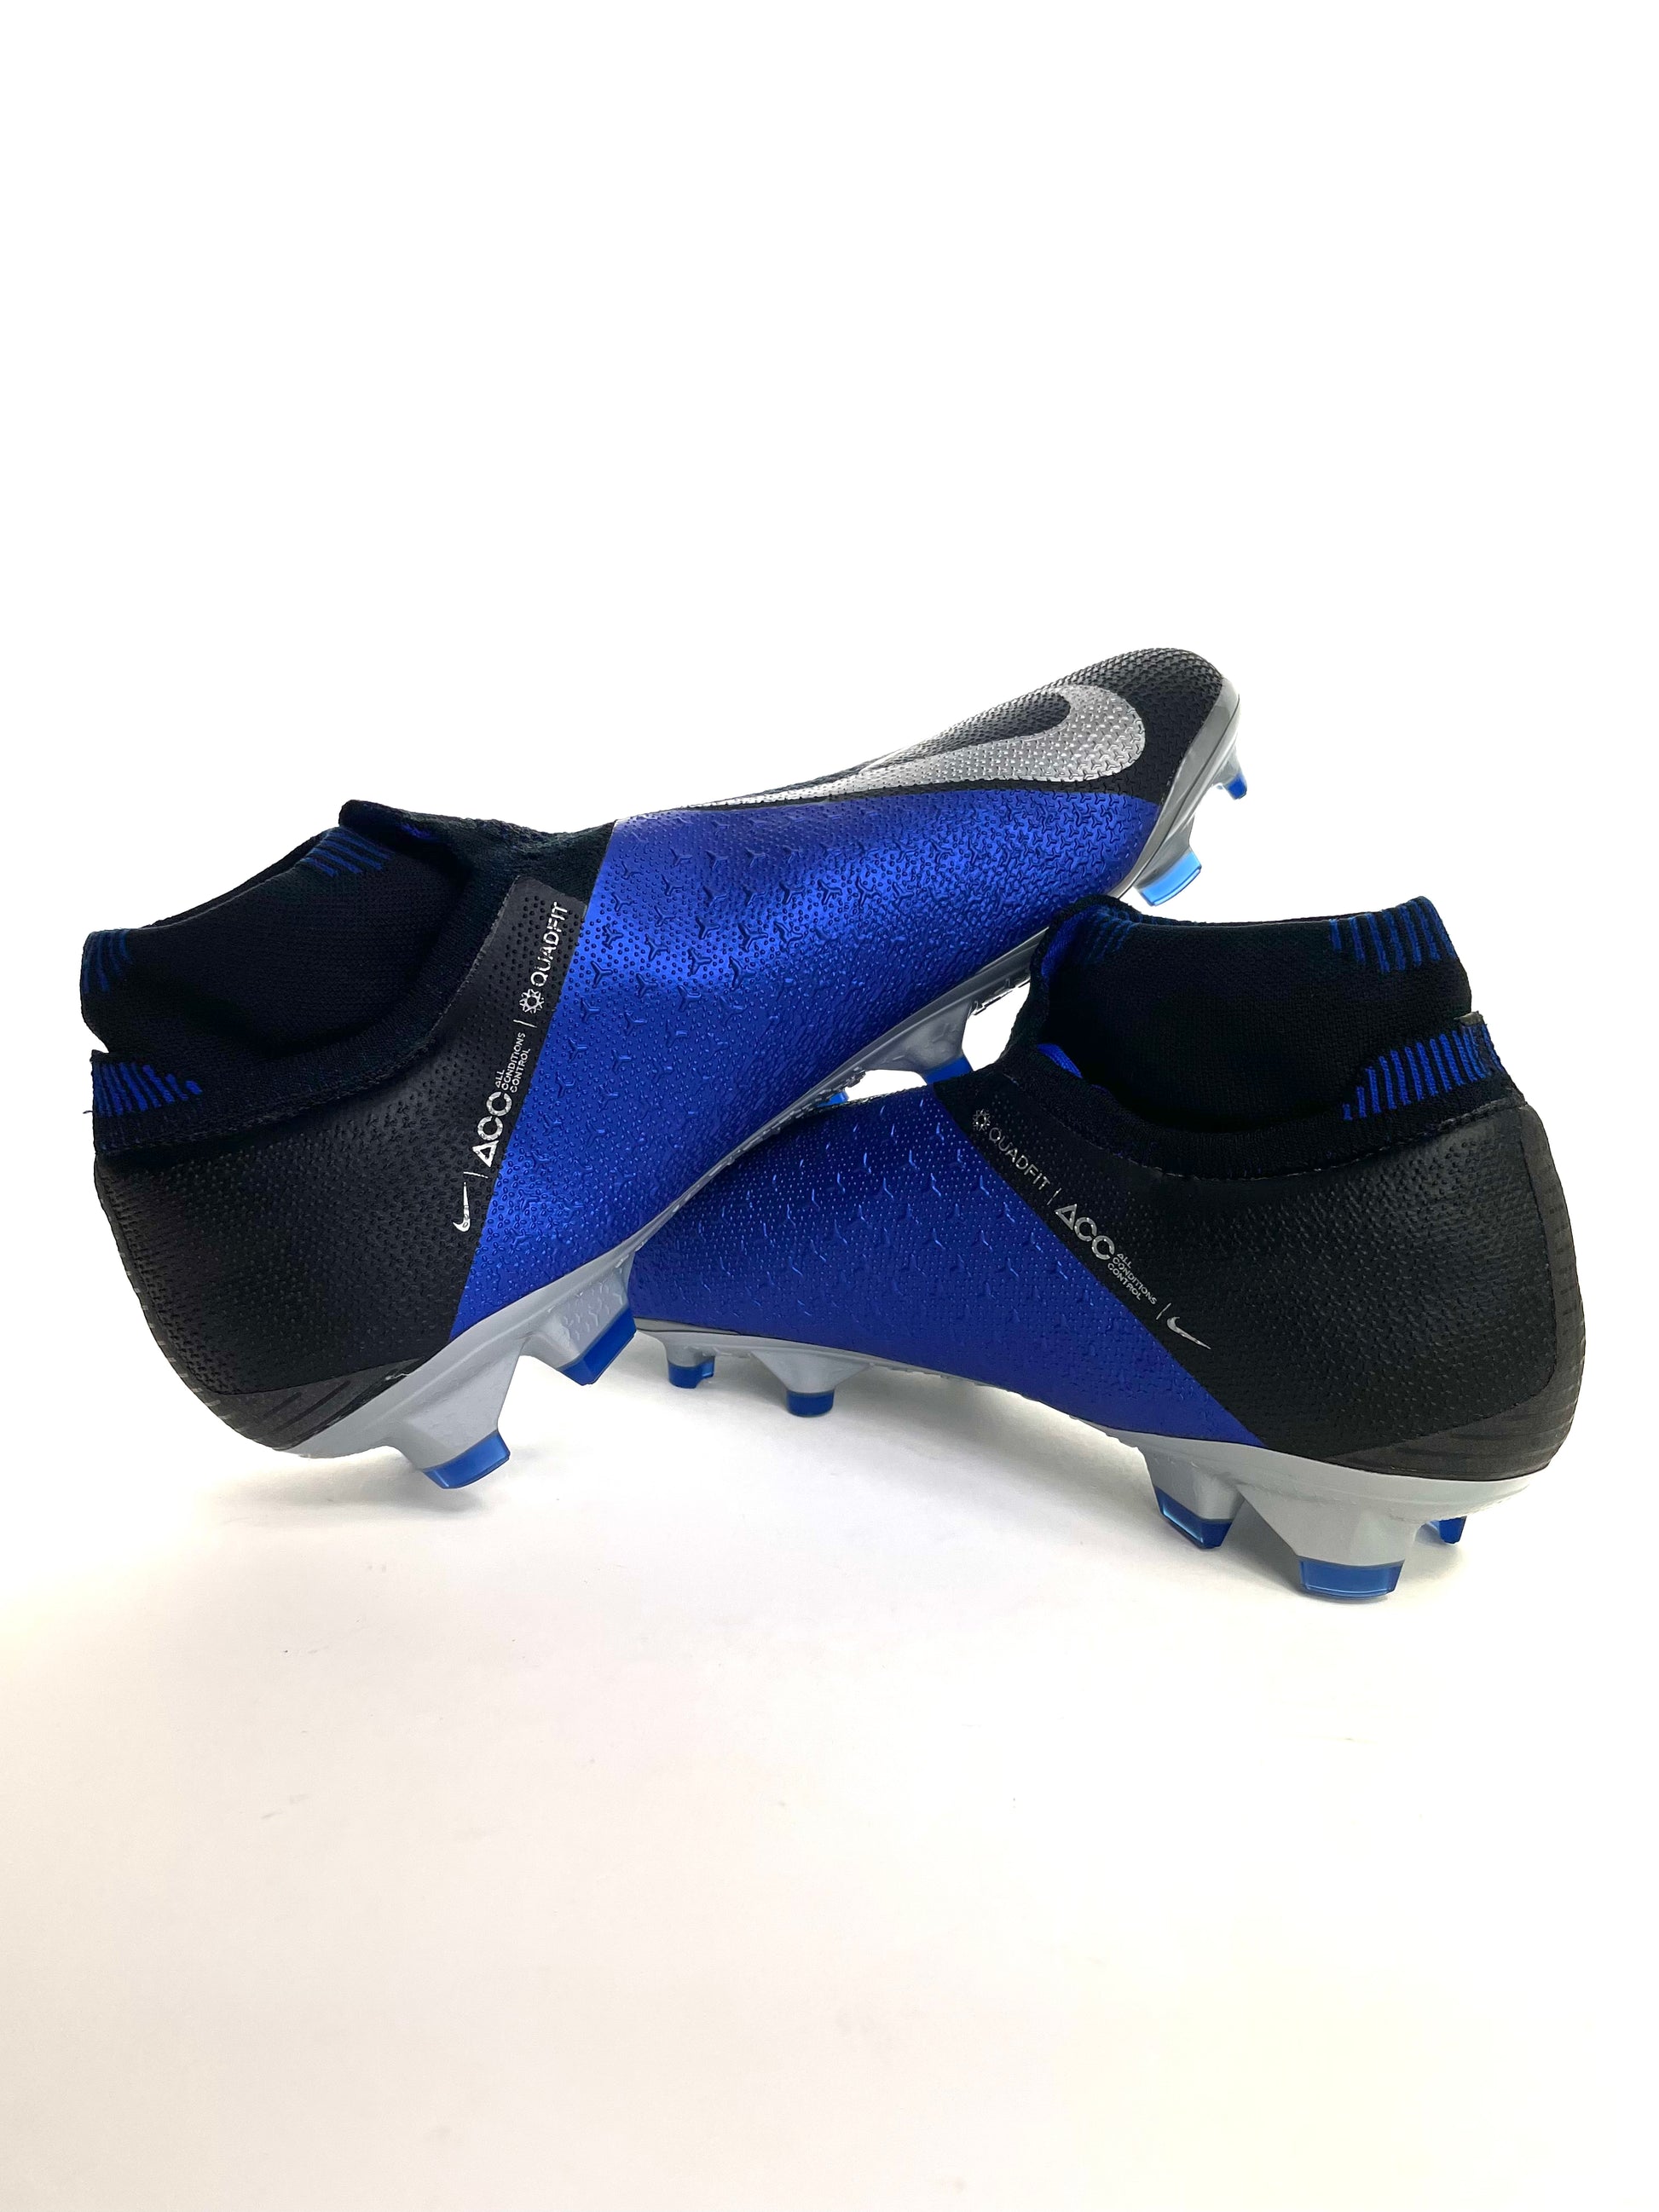 Nike Phantom Vision 1 – Halt's Boots